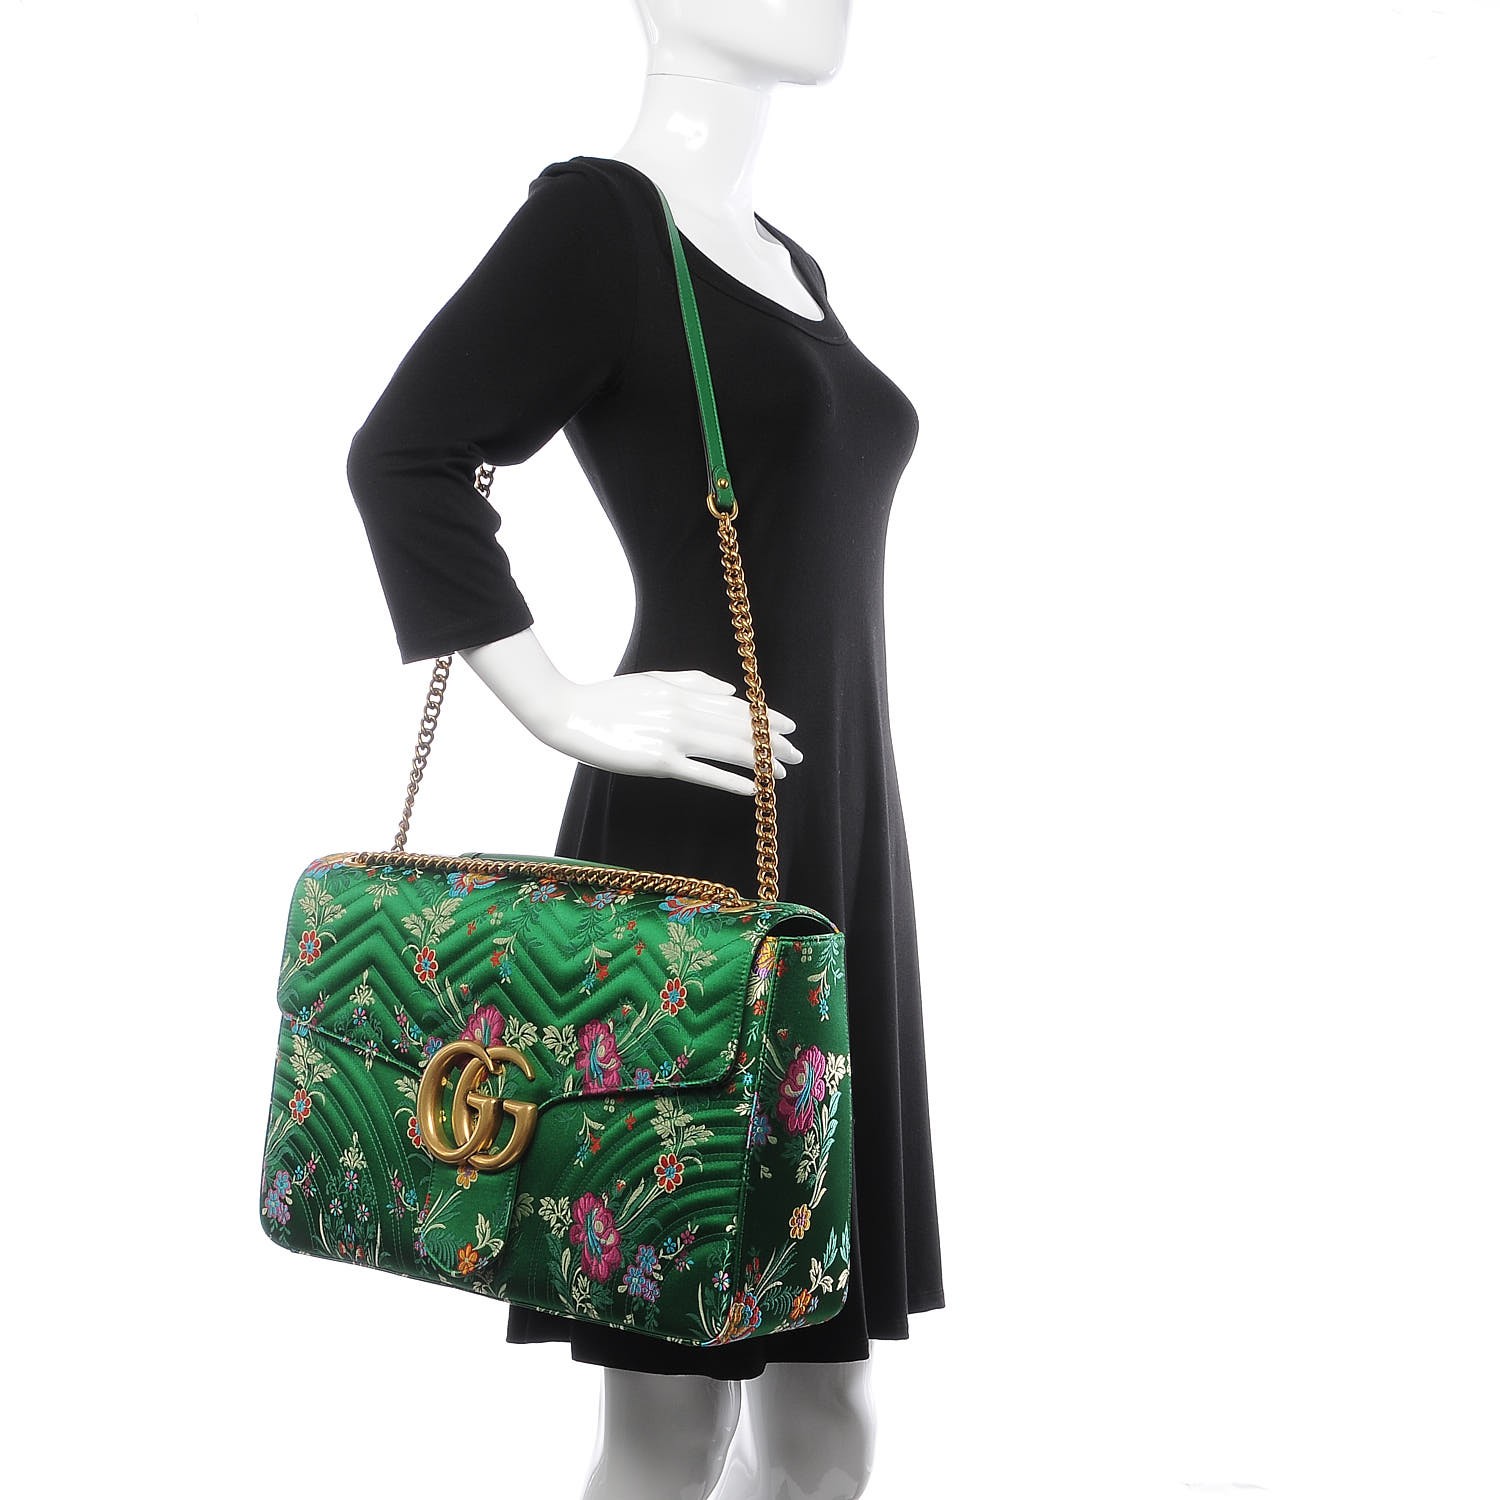 gucci green floral bag